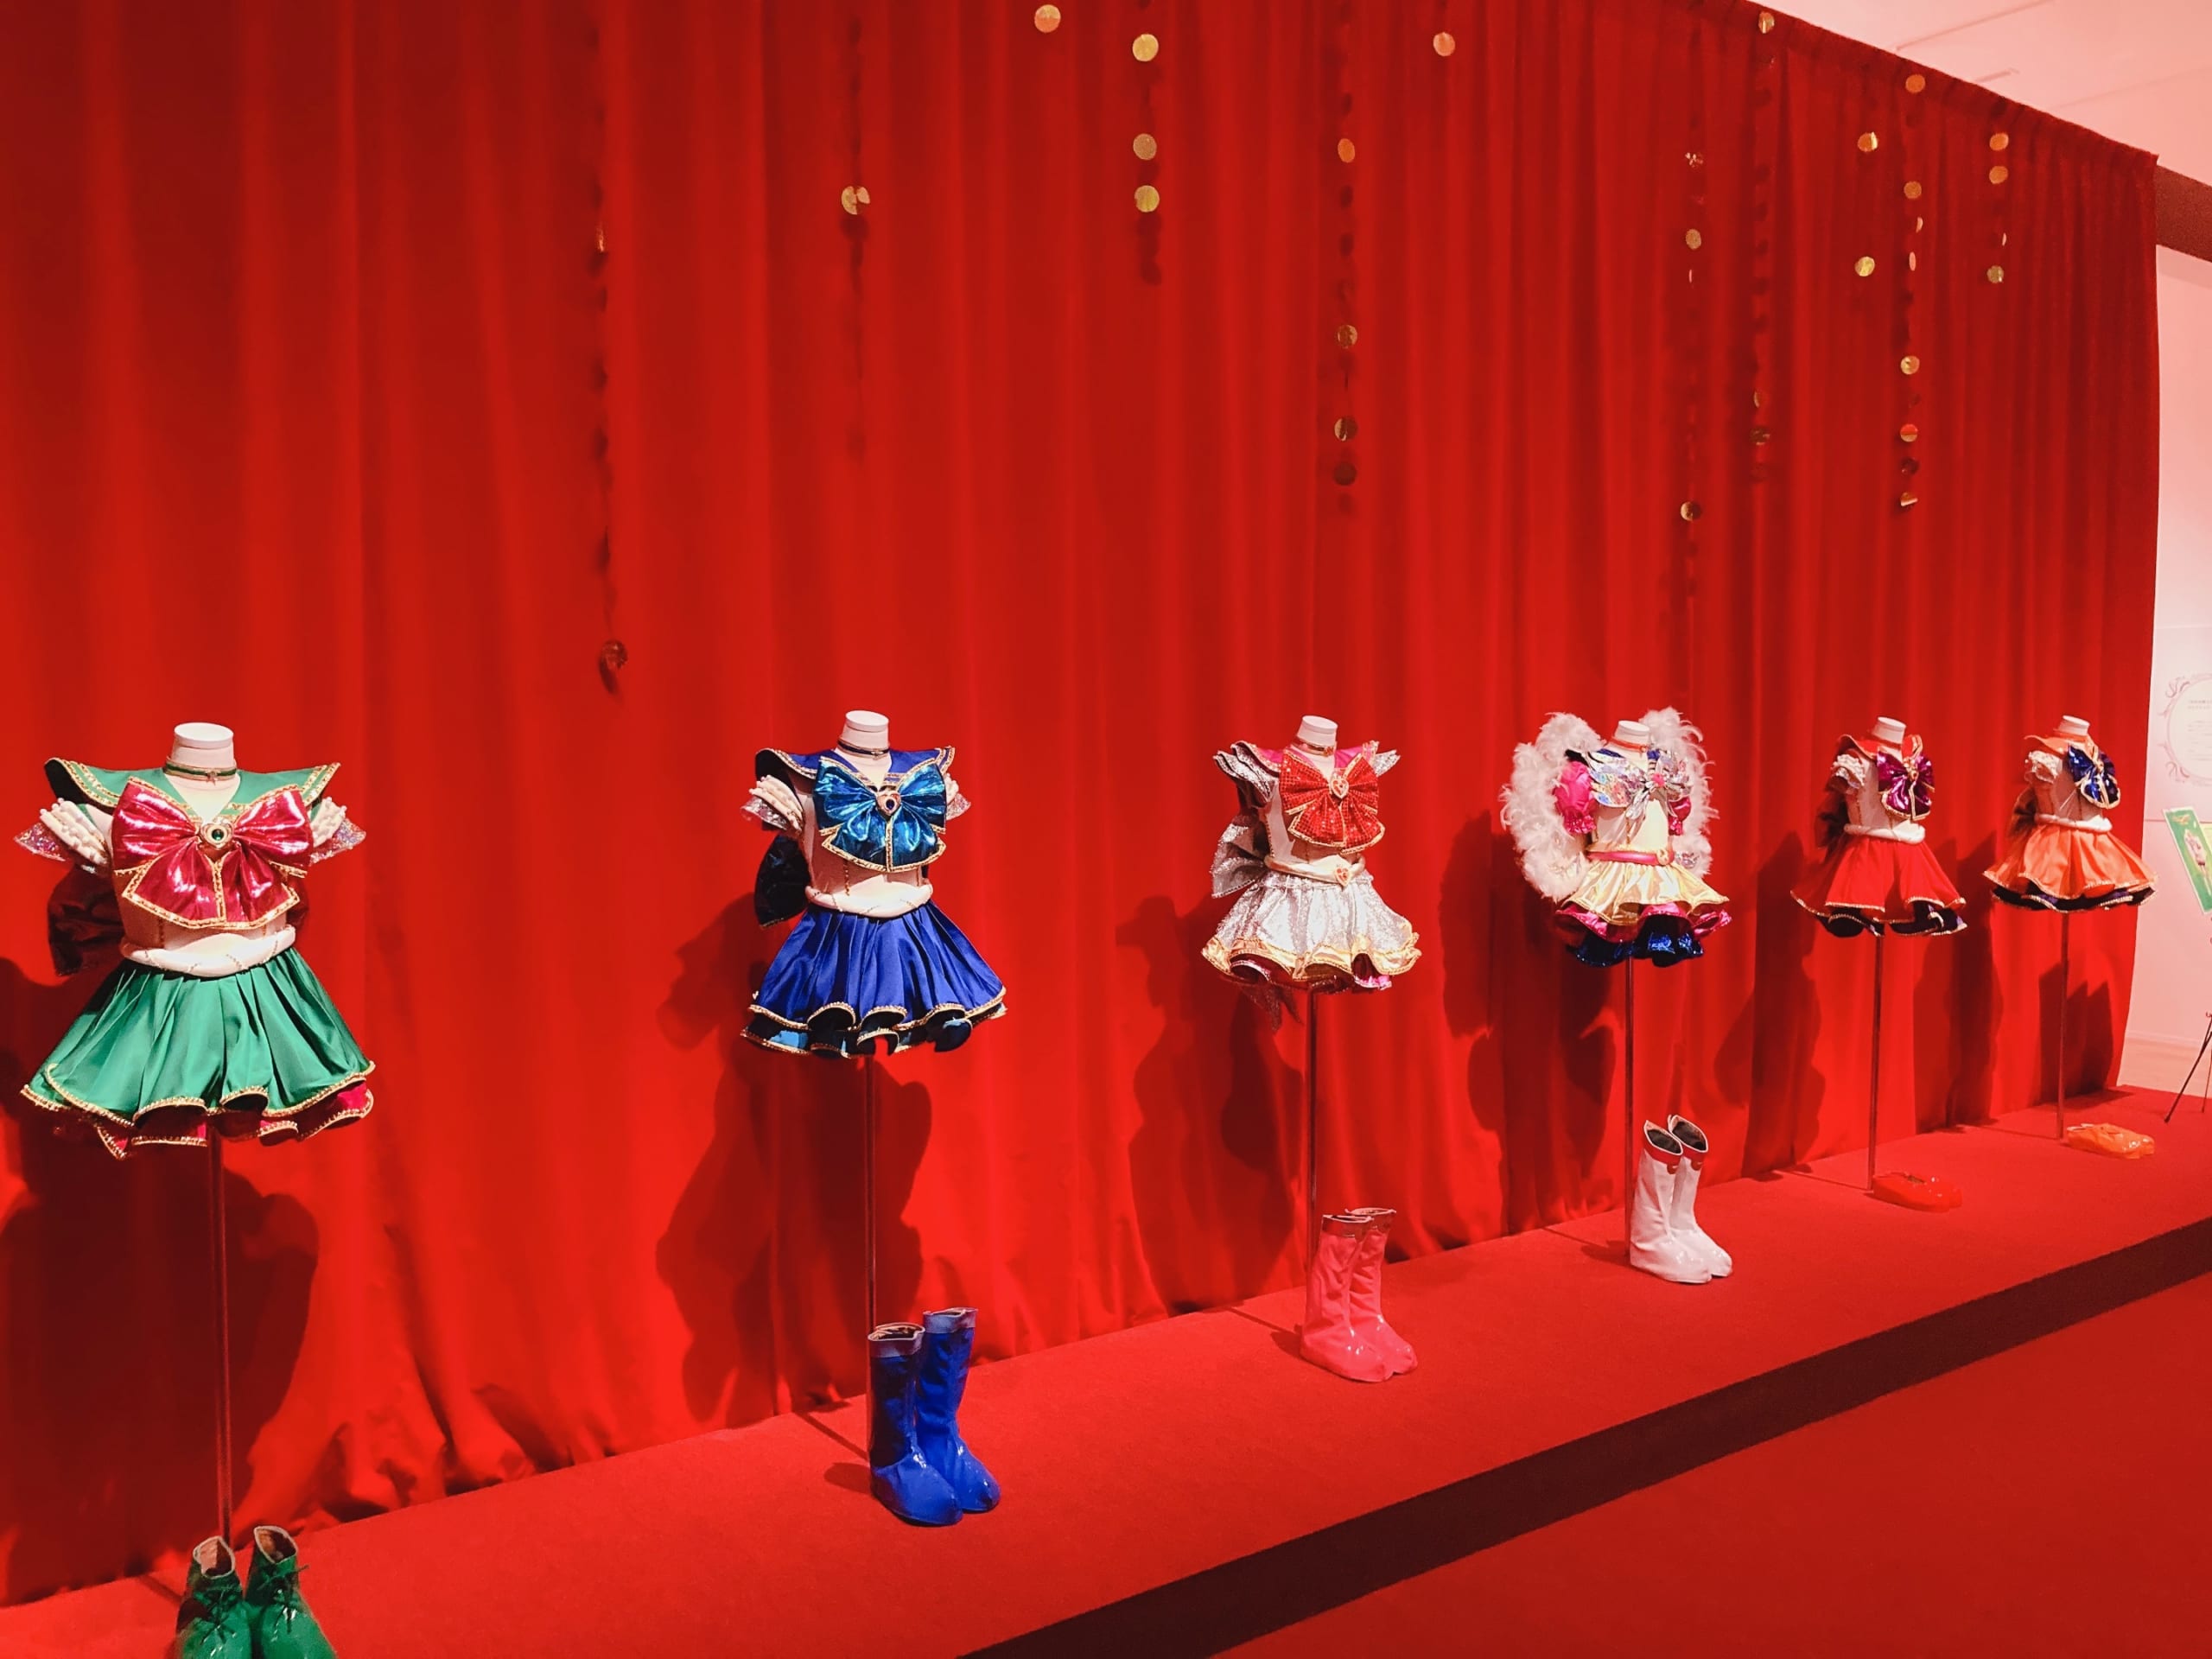 「美少女戦士セーラームーン ミュージアム」コレクション展示内 ミュージカル衣装 セーラー戦士衣装キラキラ